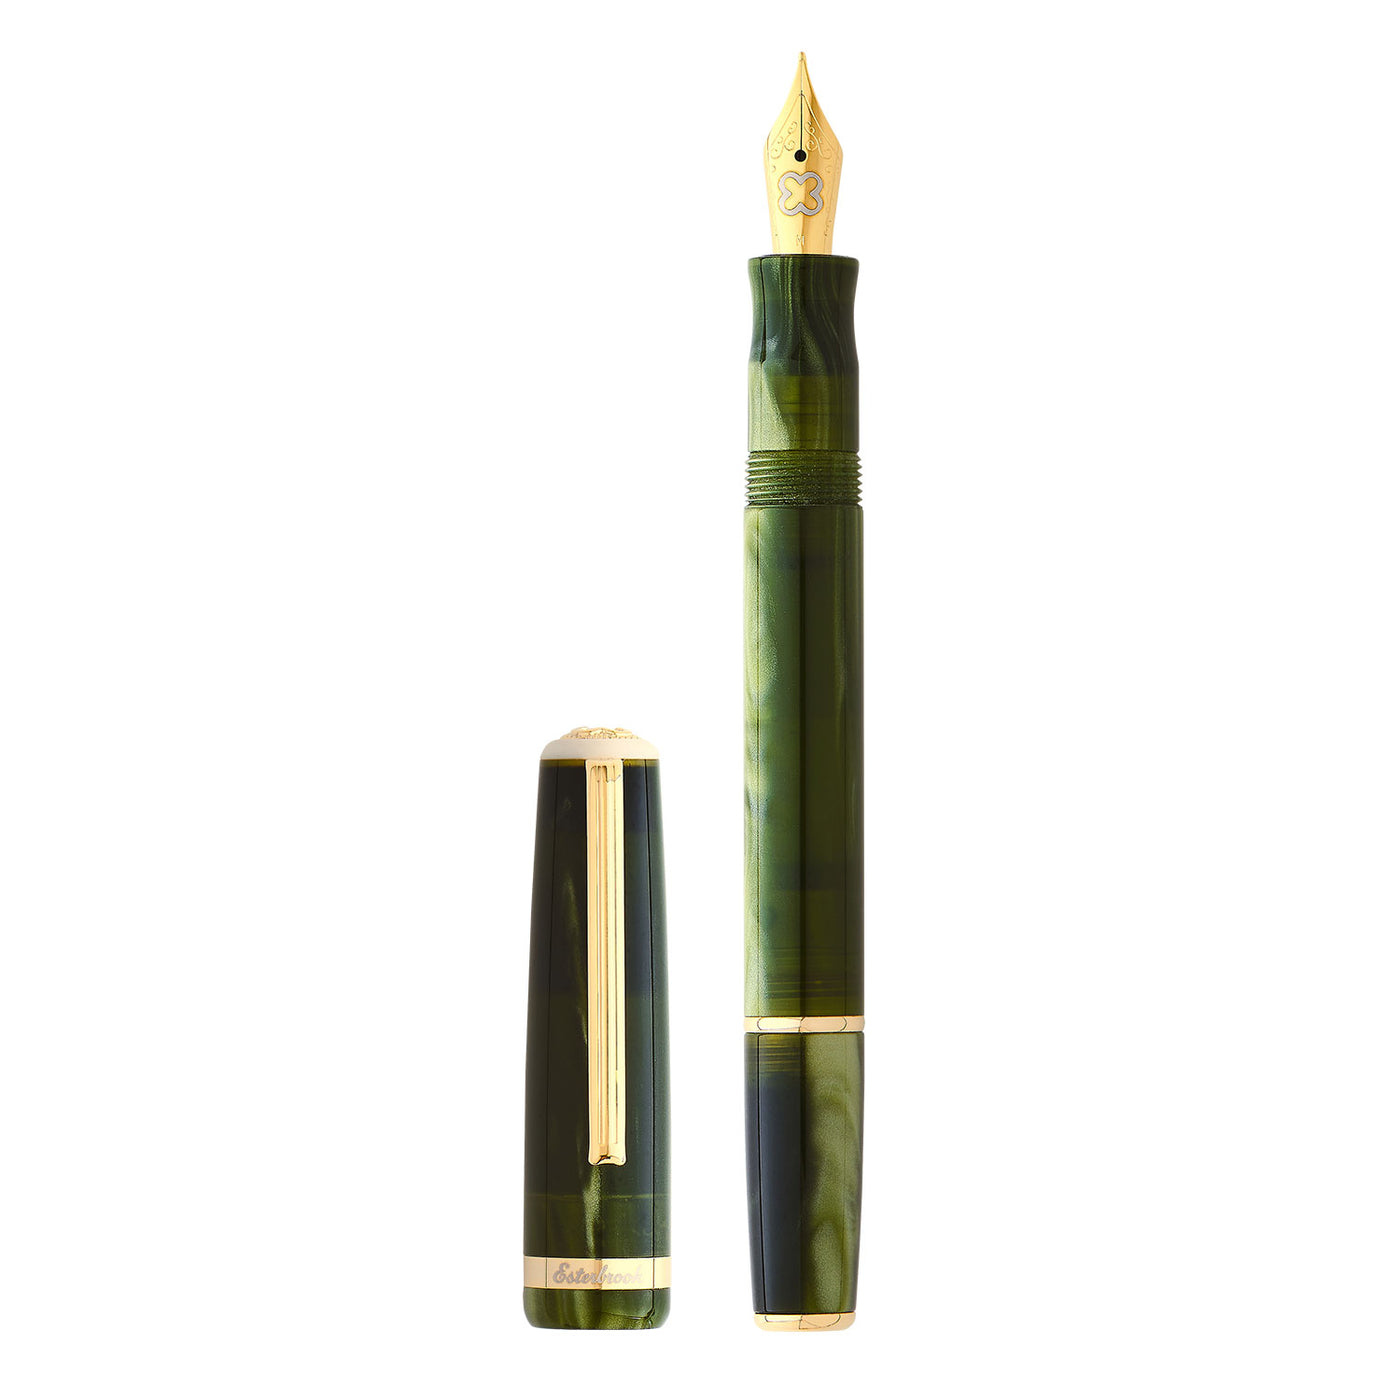 Esterbrook JR Pocket Fountain Pen - Palm Green GT 2